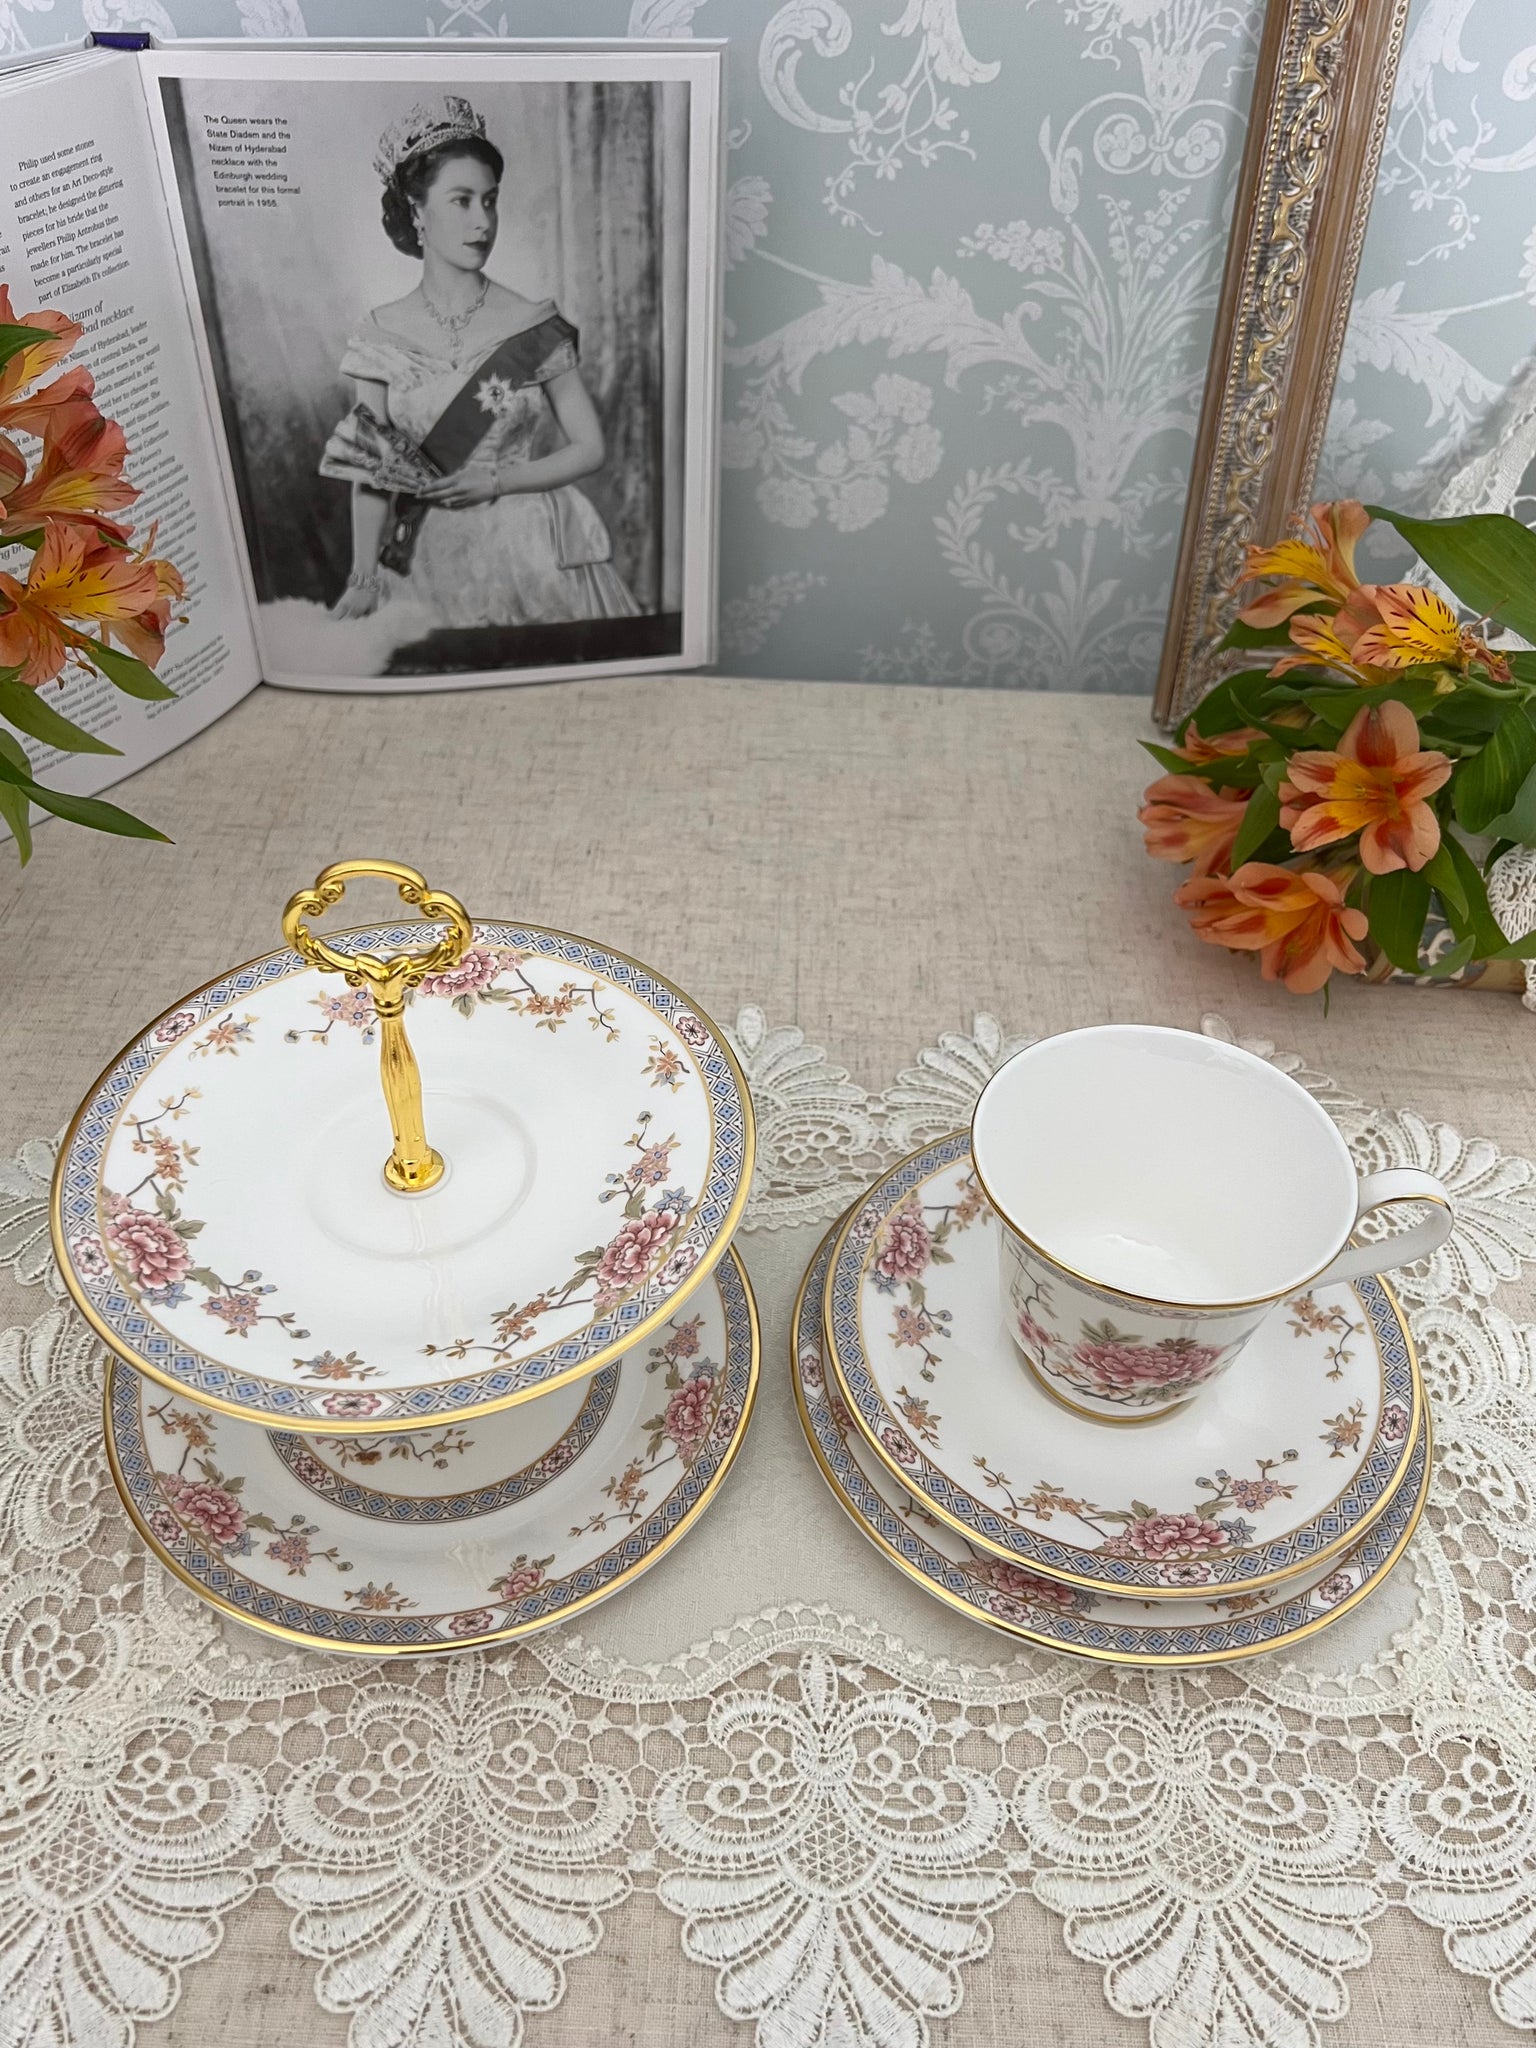 エリザベス女王とパディントンお茶会のスケッチで使用されたロイヤル ...